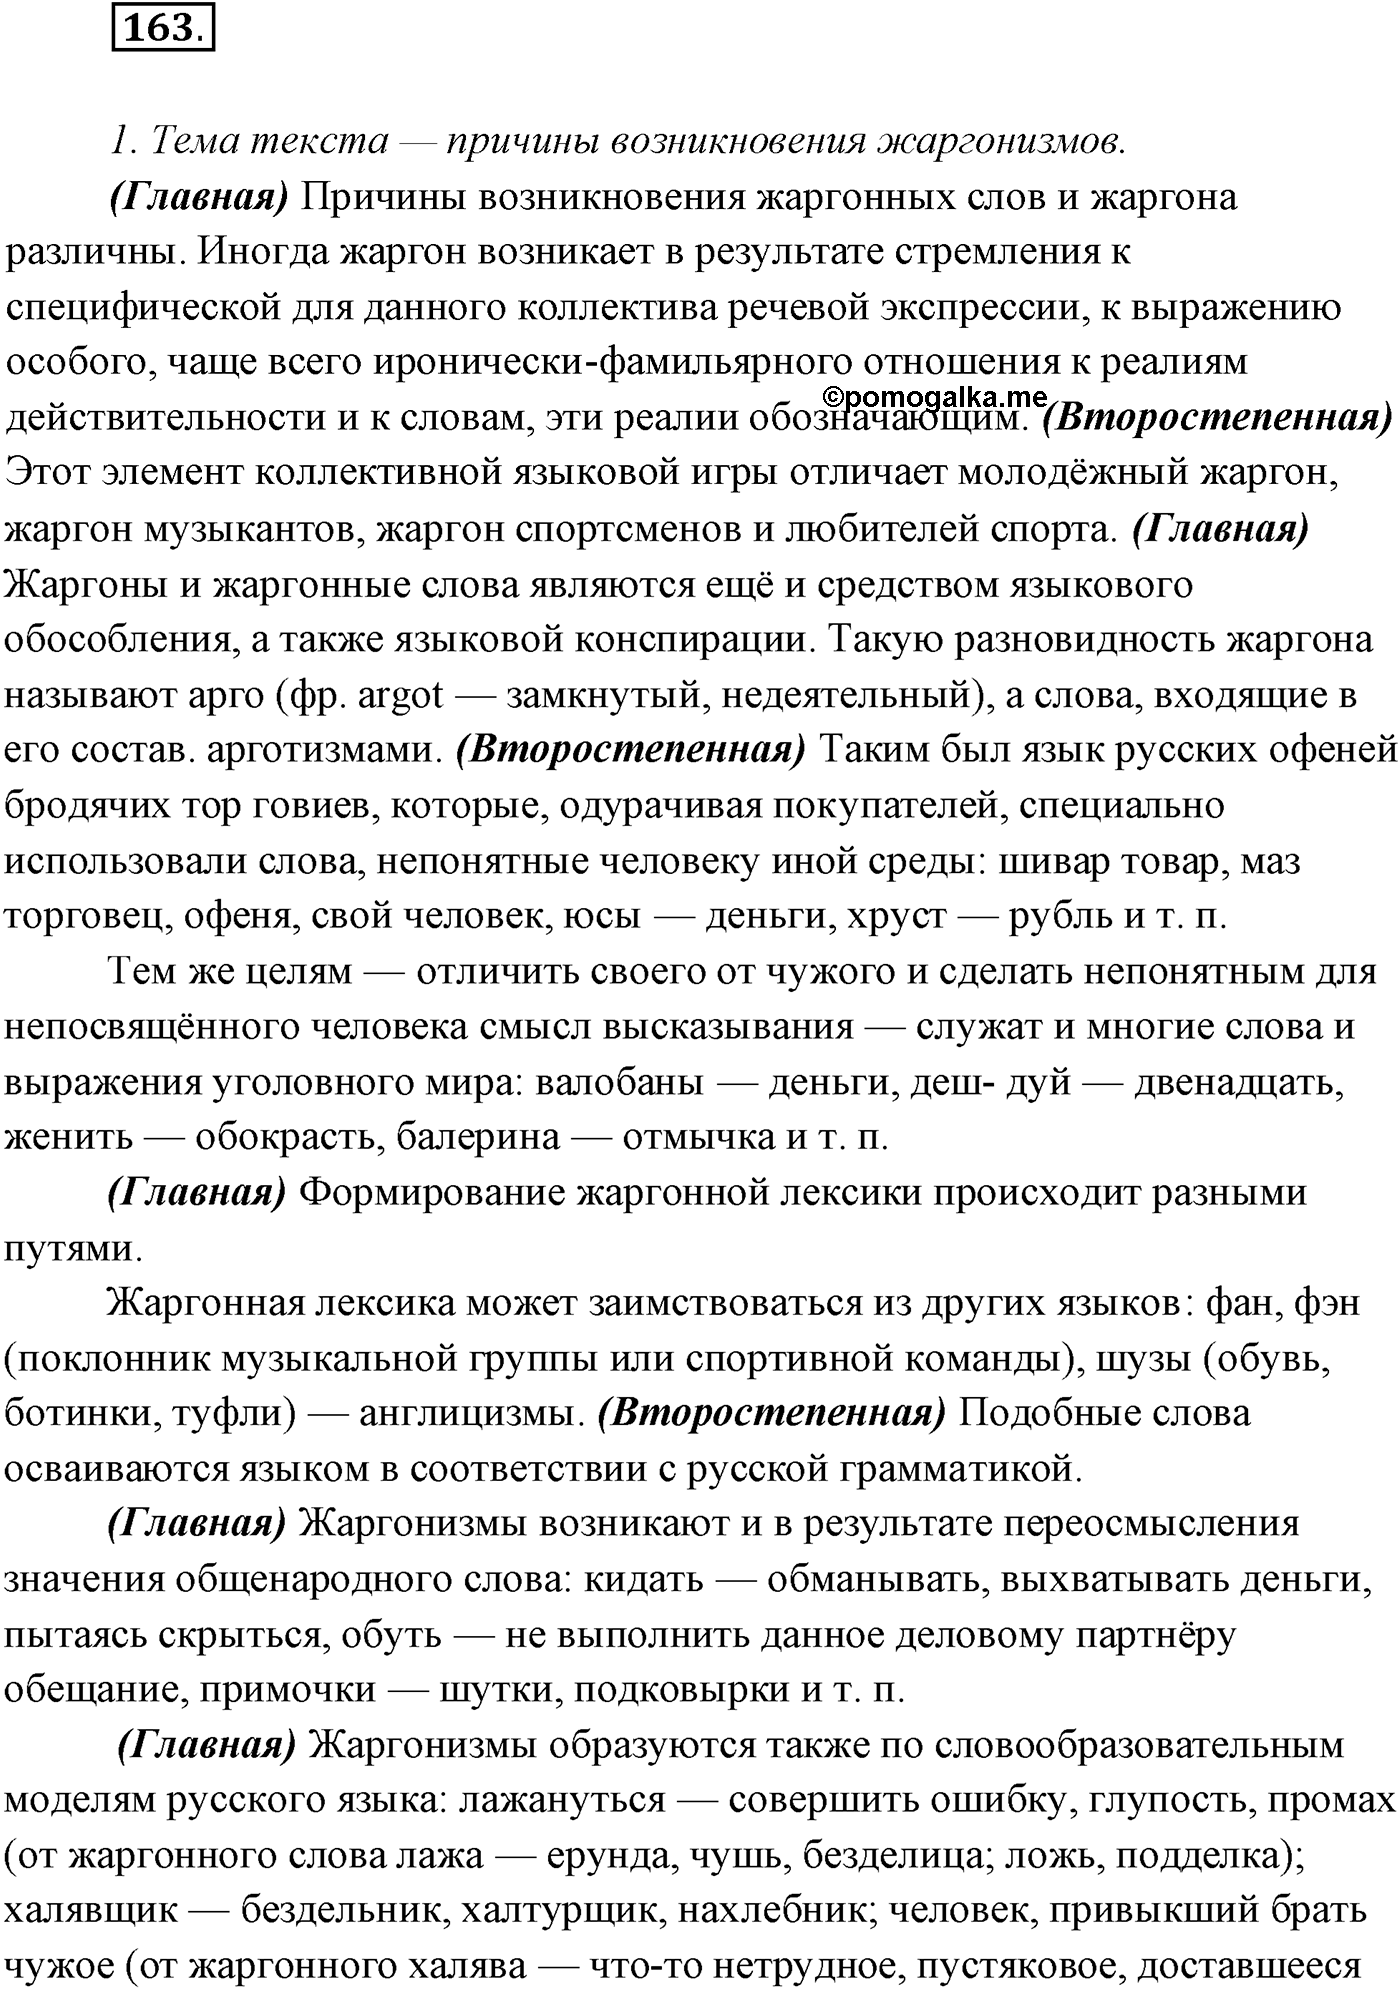 упражнение №163 русский язык 10 класс Гусарова 2021 год